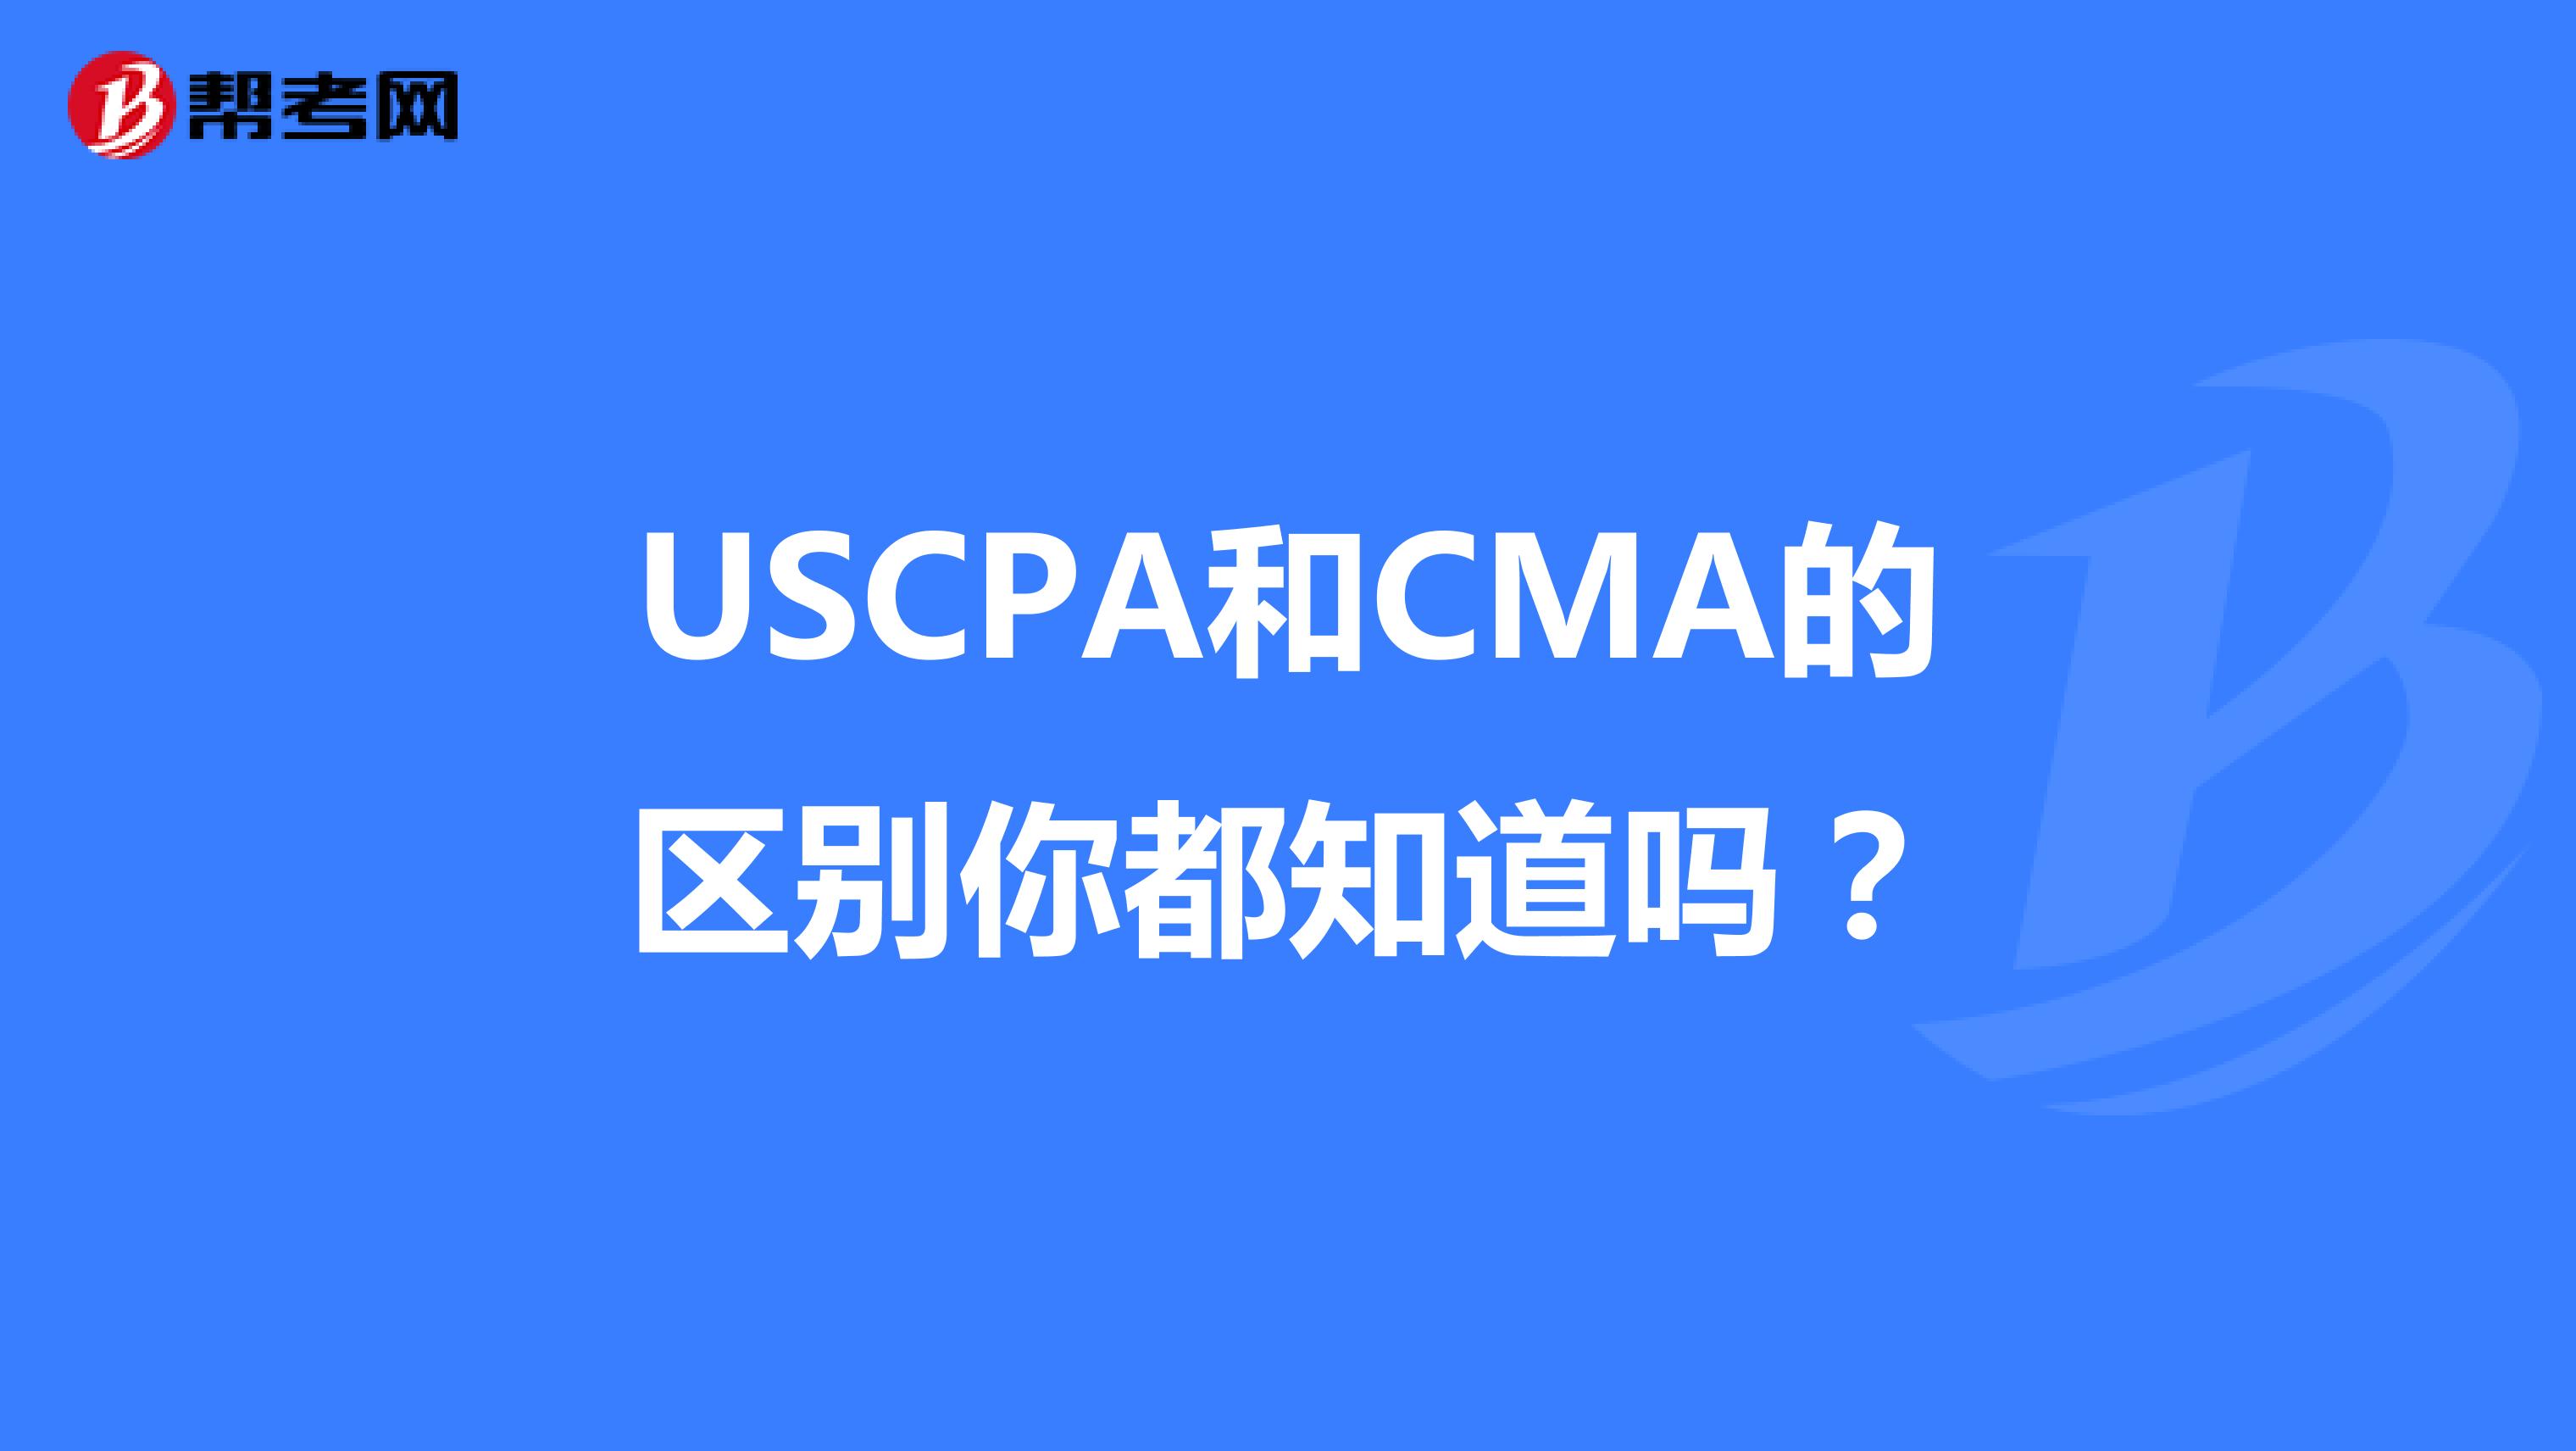 USCPA和CMA的区别你都知道吗？